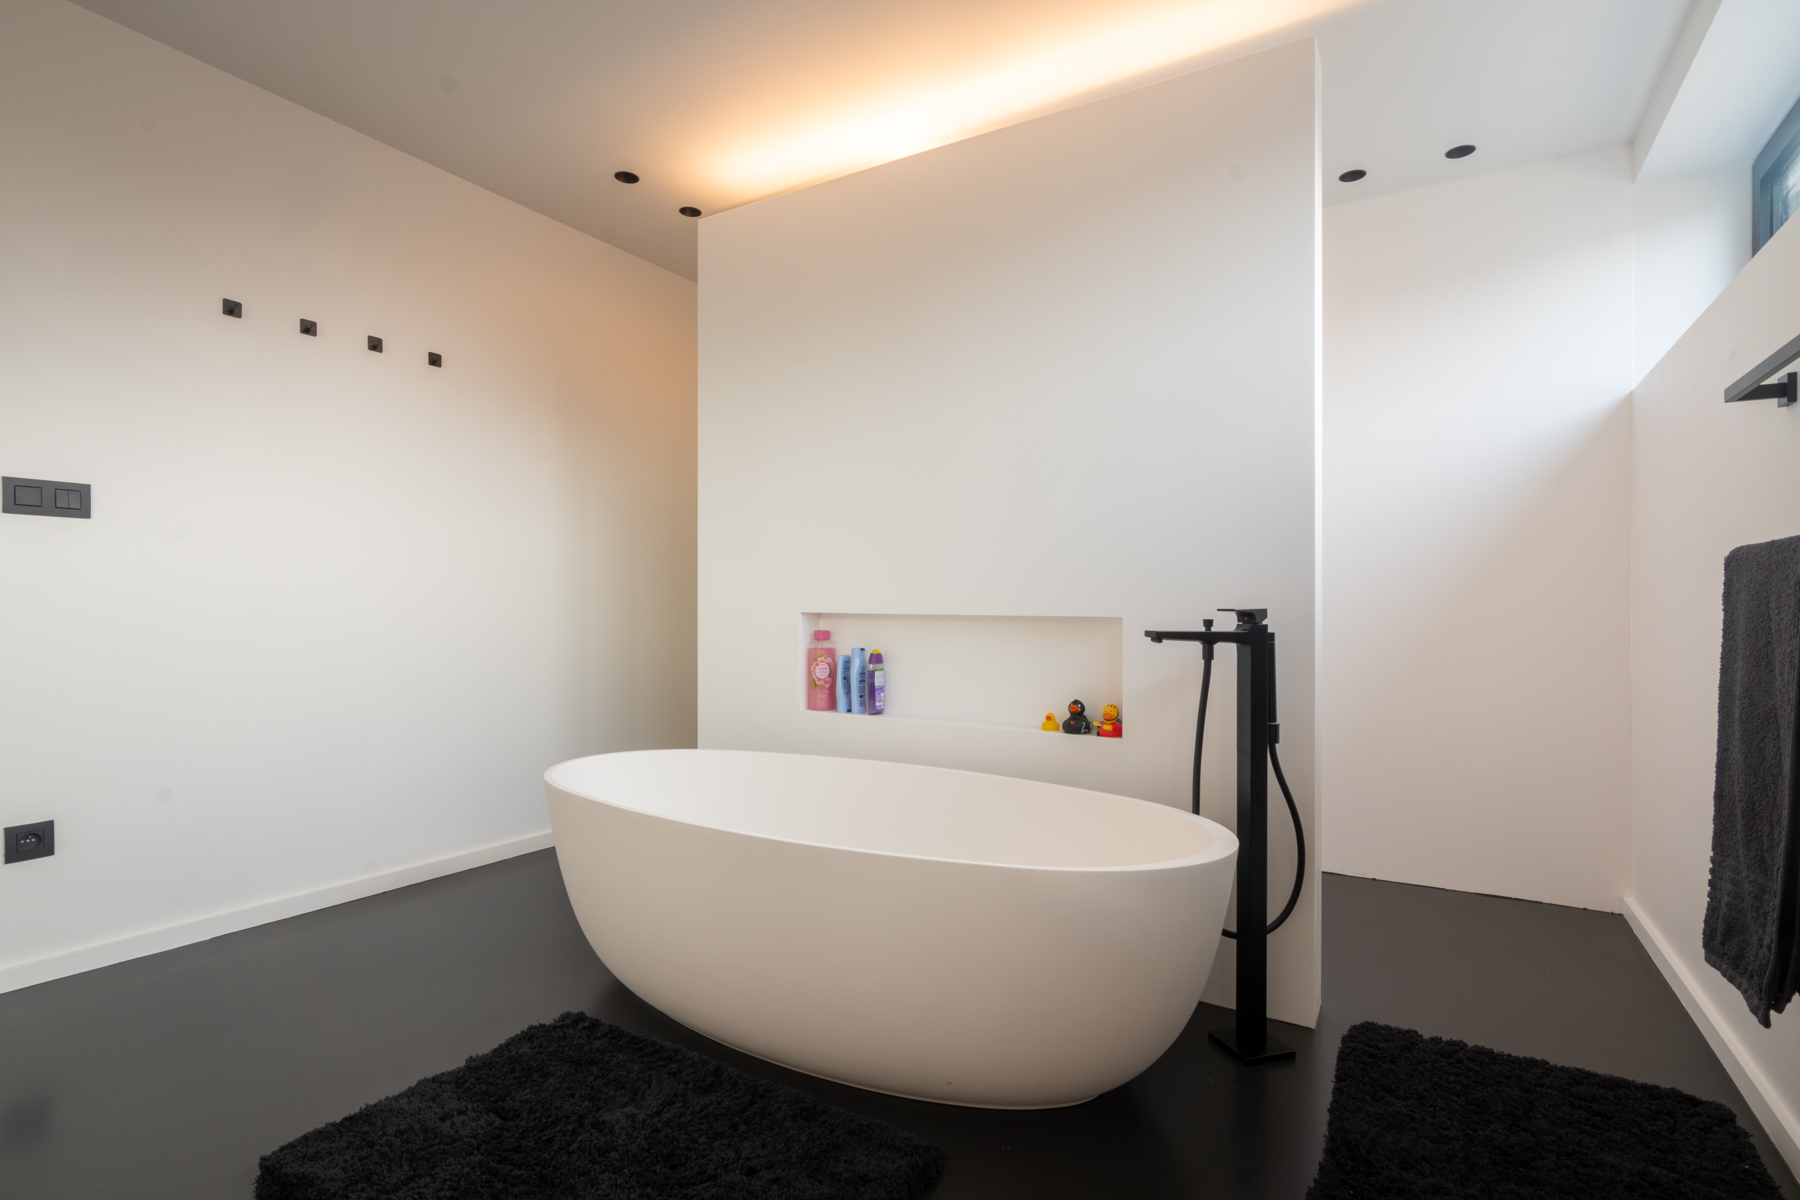 Moderne badkamer met ledstrip.